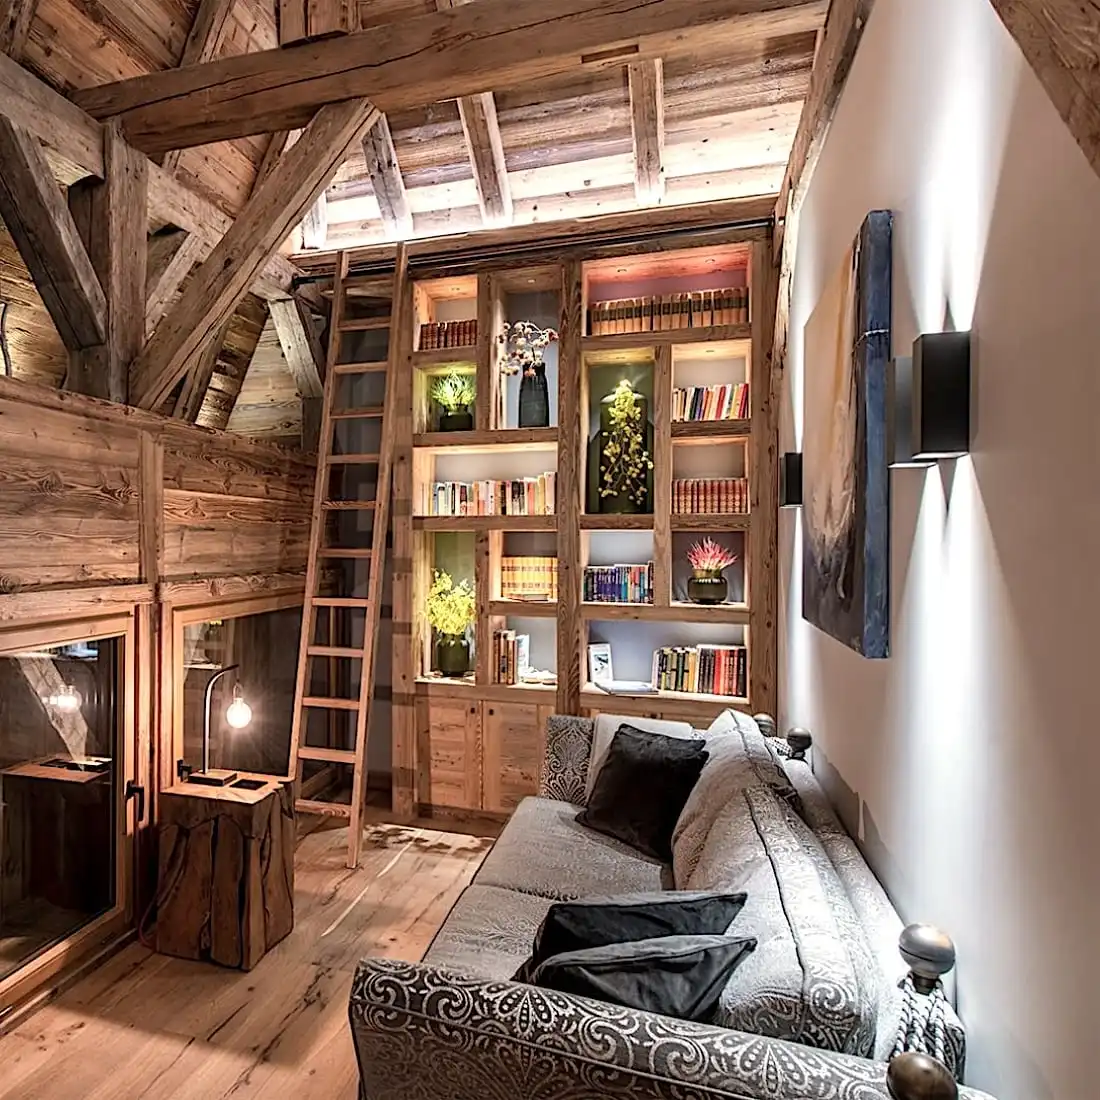  Chambre mansardée confortable avec poutres en bois, bibliothèque intégrée remplie de livres colorés, échelle, canapé confortable et éclairage tamisé grâce à des panneaux vieux bois. 